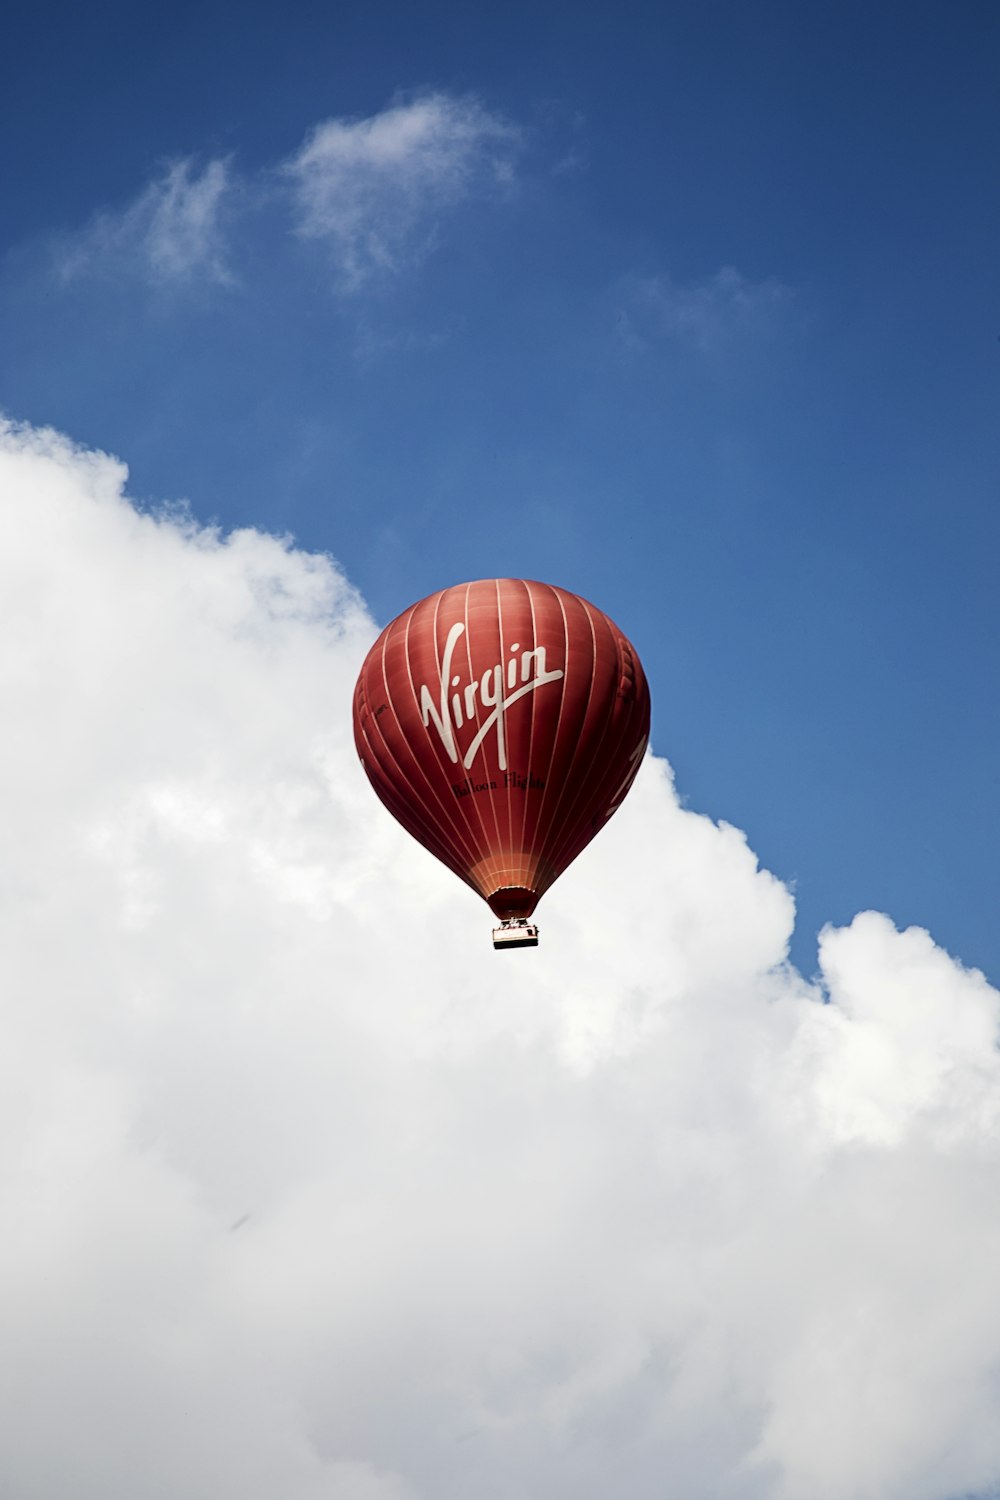 fotografia time lapse della mongolfiera Virgin volante